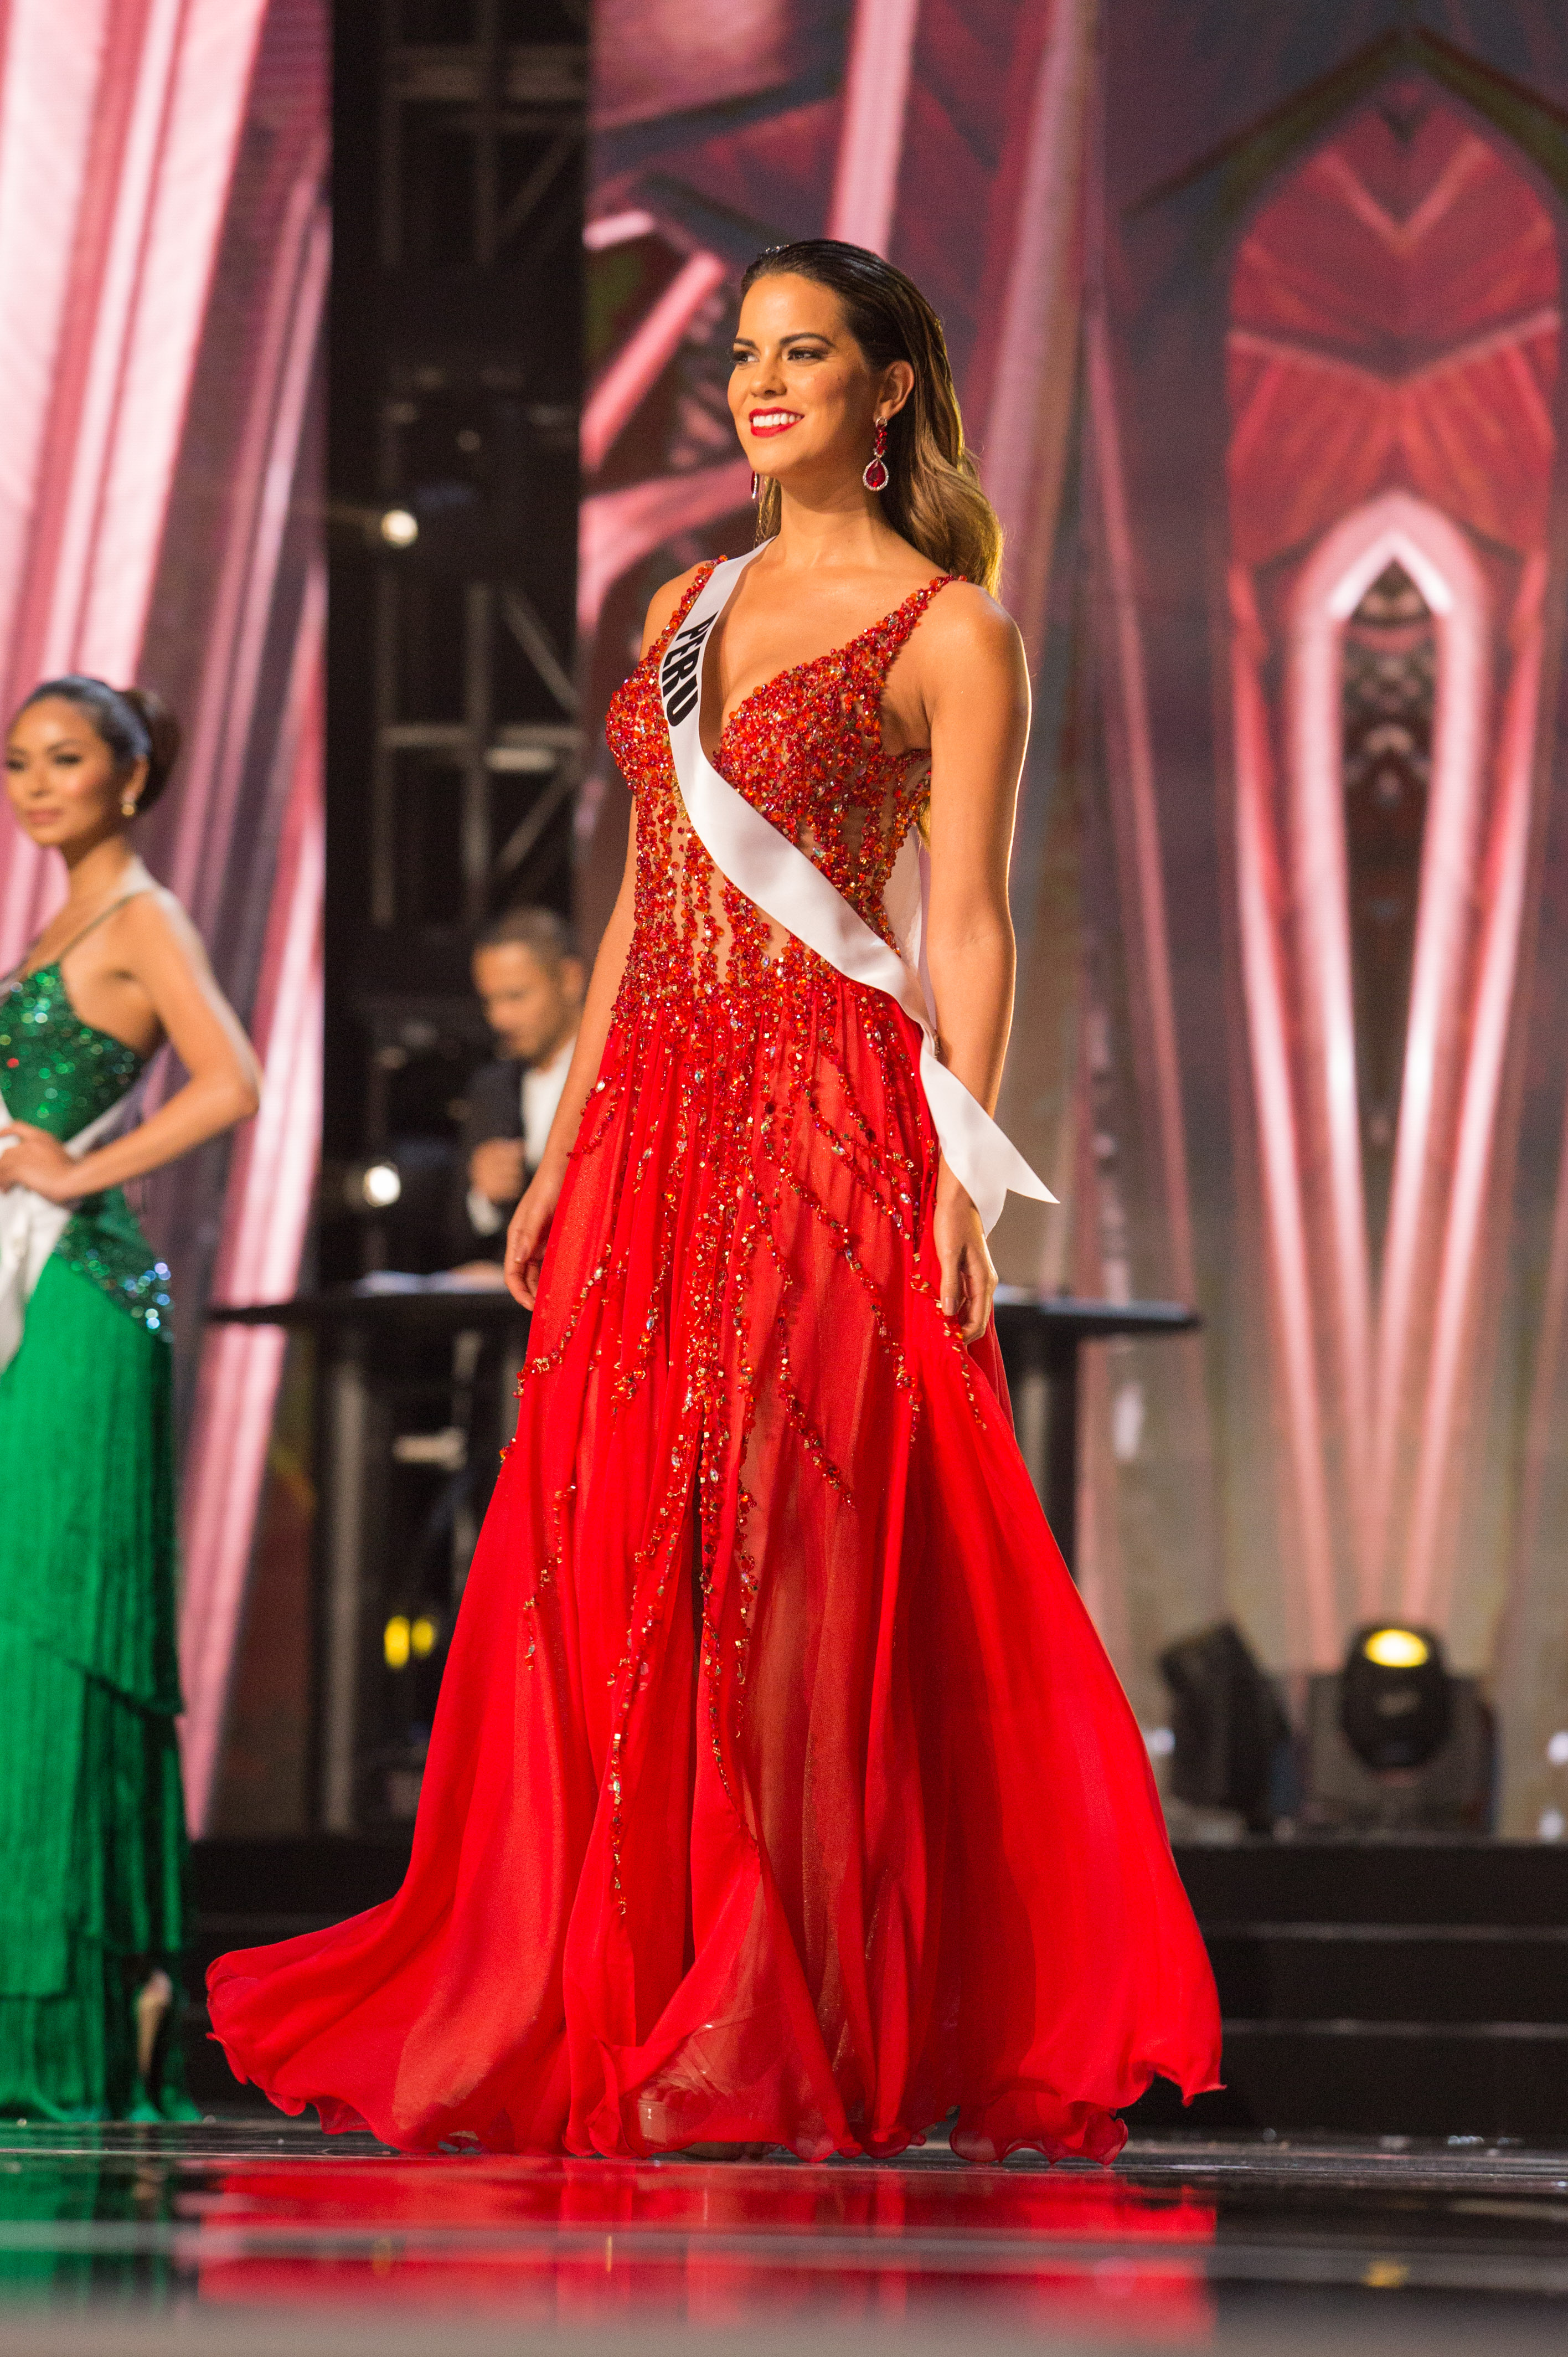 Valeria Piazza, Miss Peru 2016 